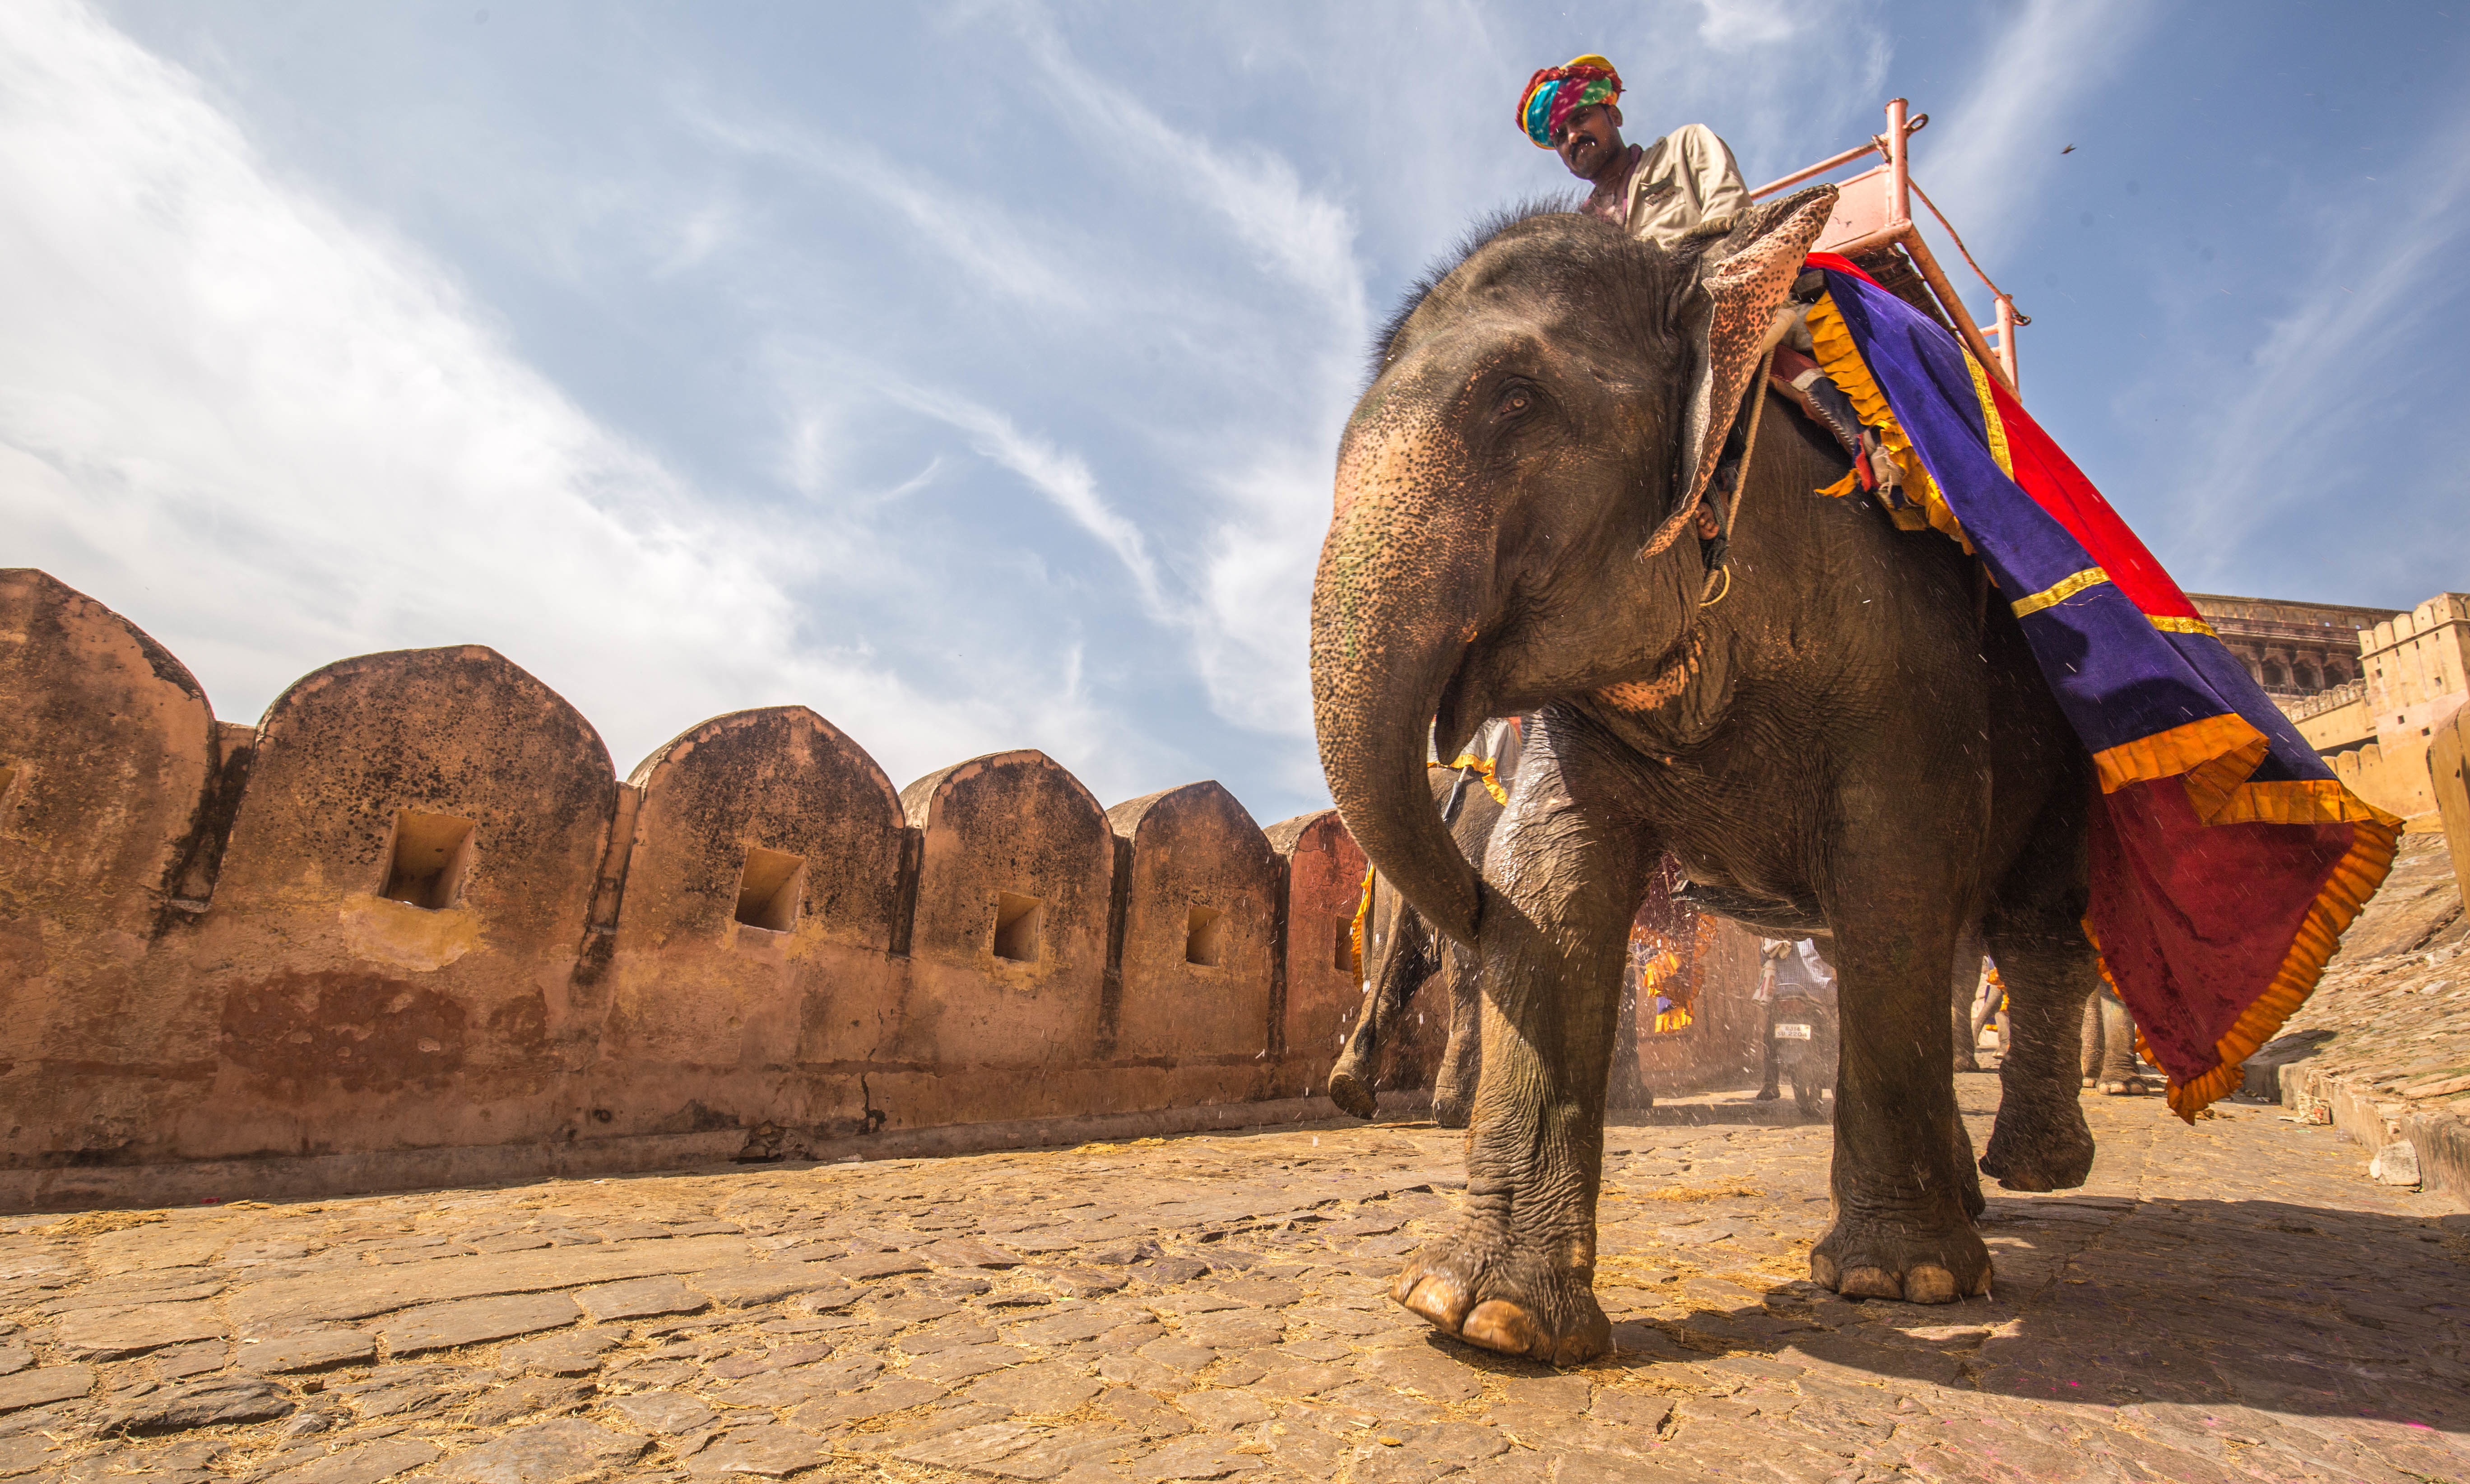 Free Images : landscape, building, ride, elephant, riding, temple ...